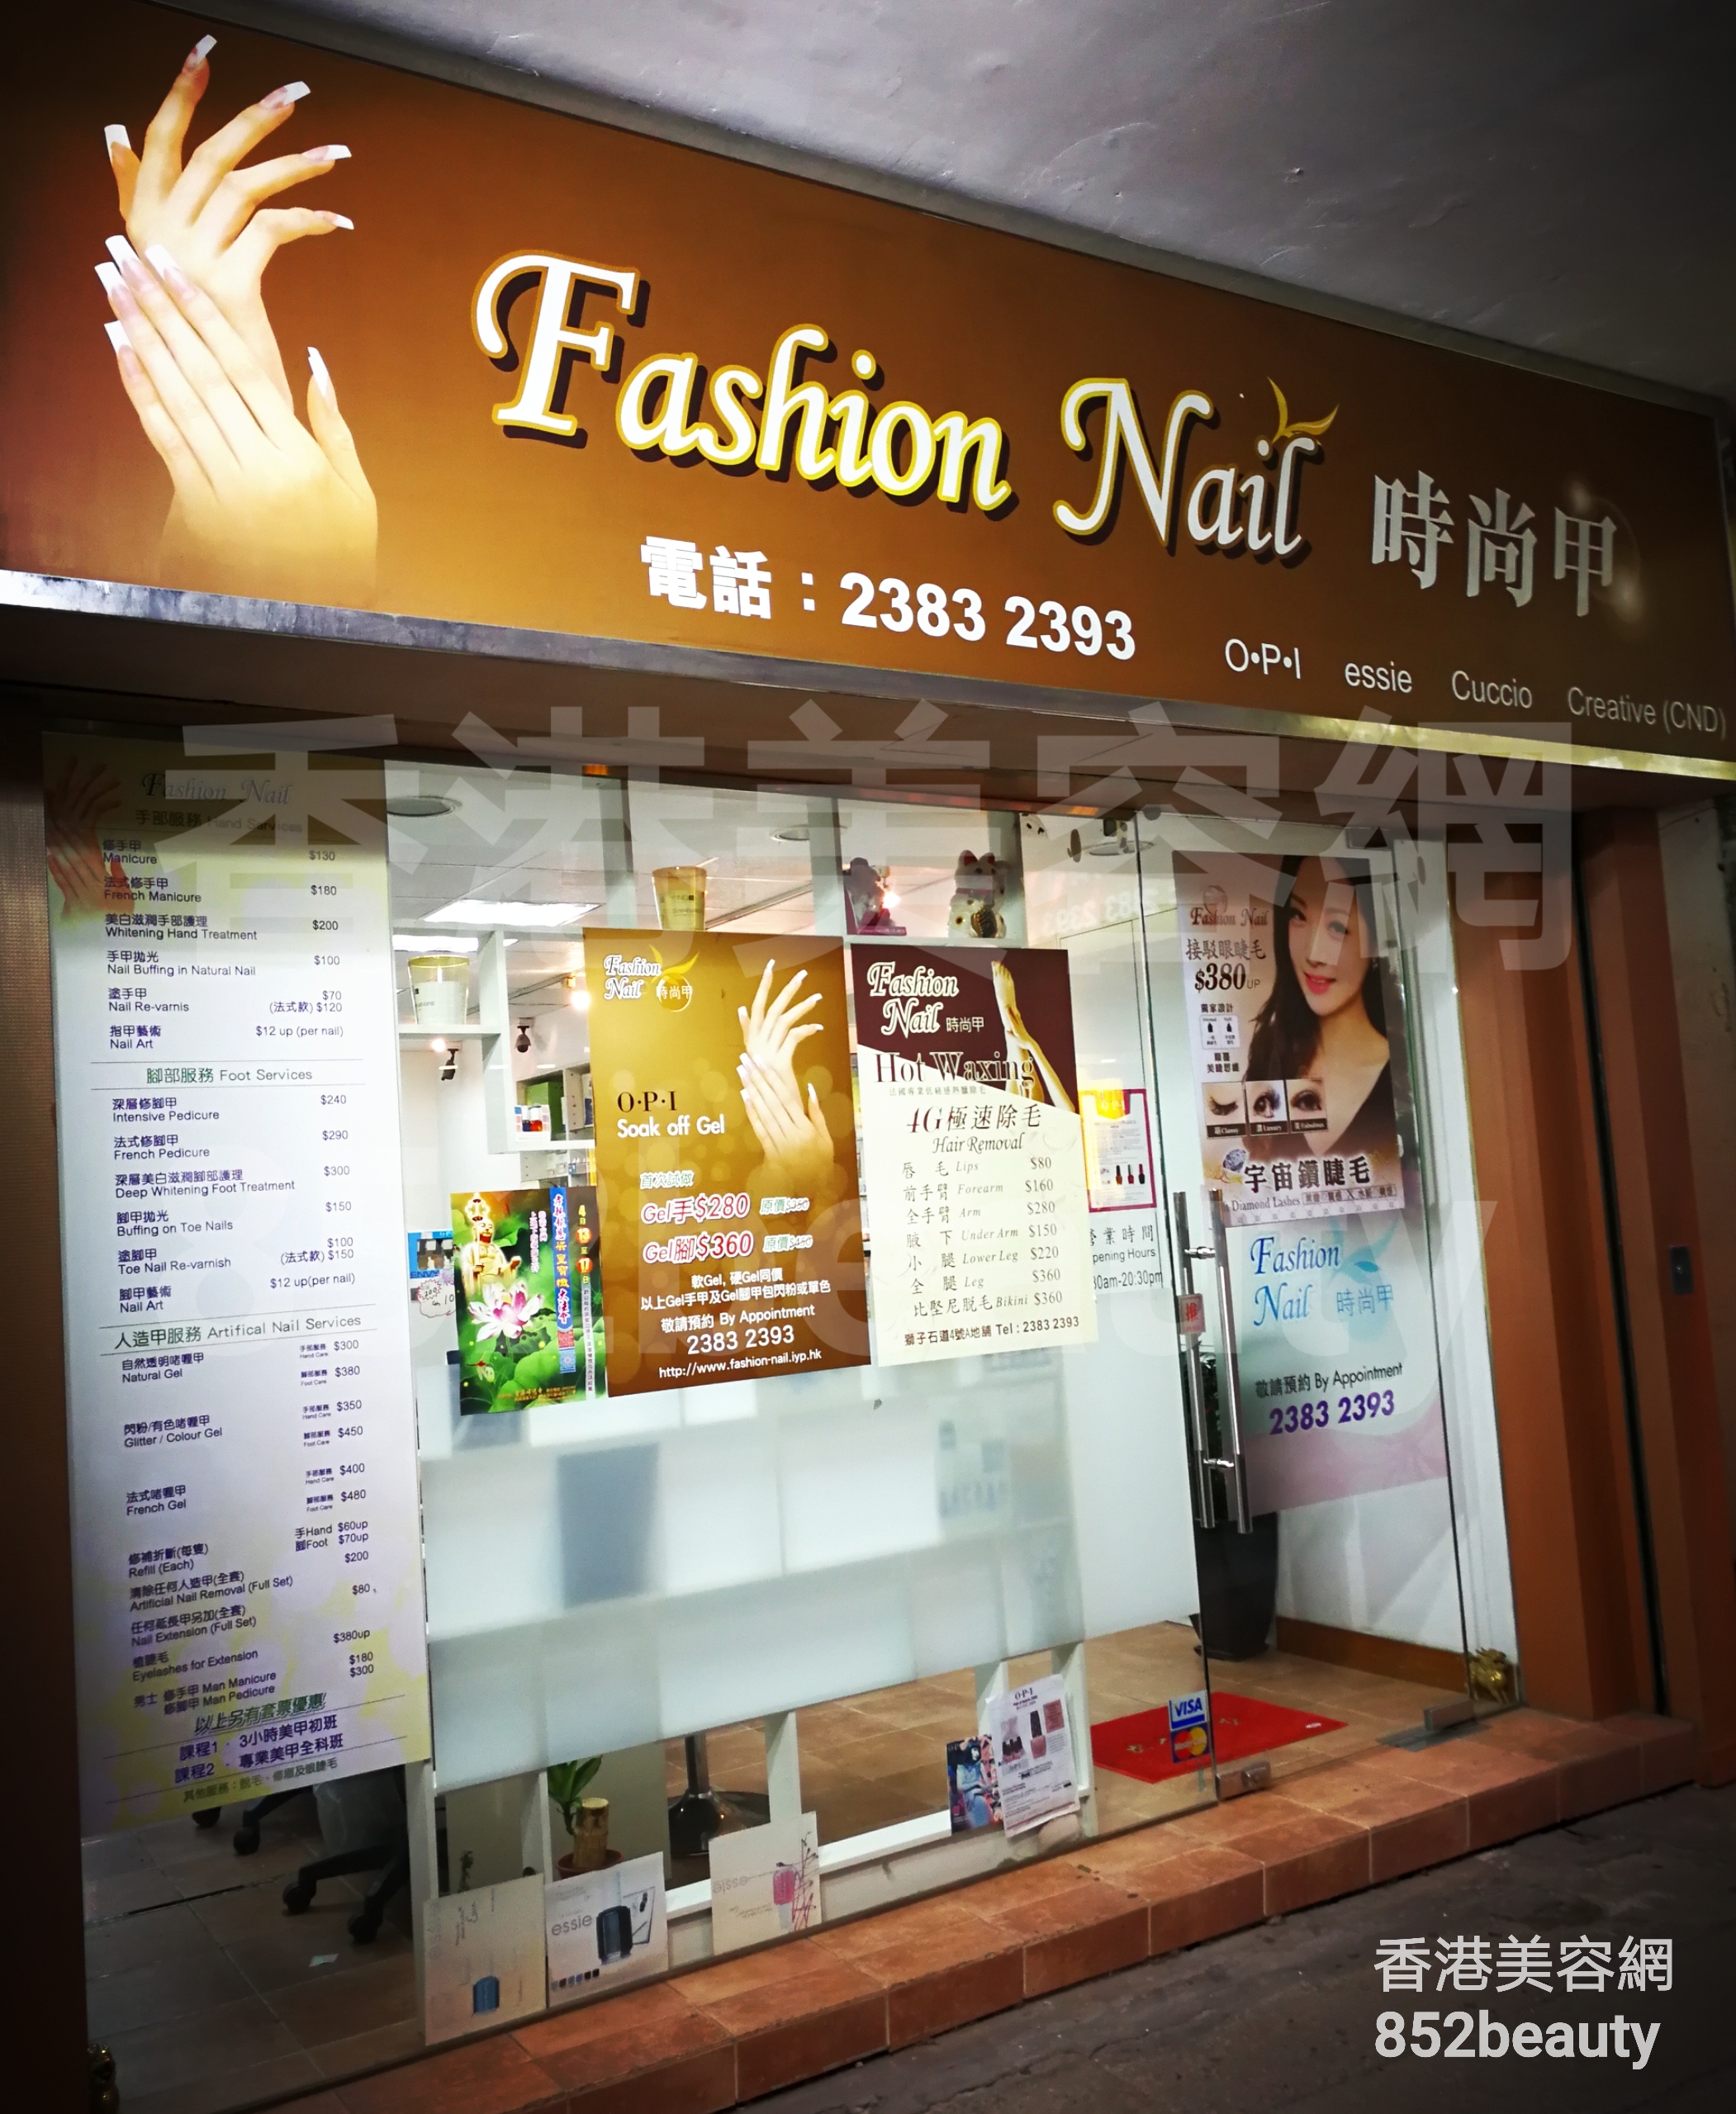 Manicure: Fashion Nail 時尚甲